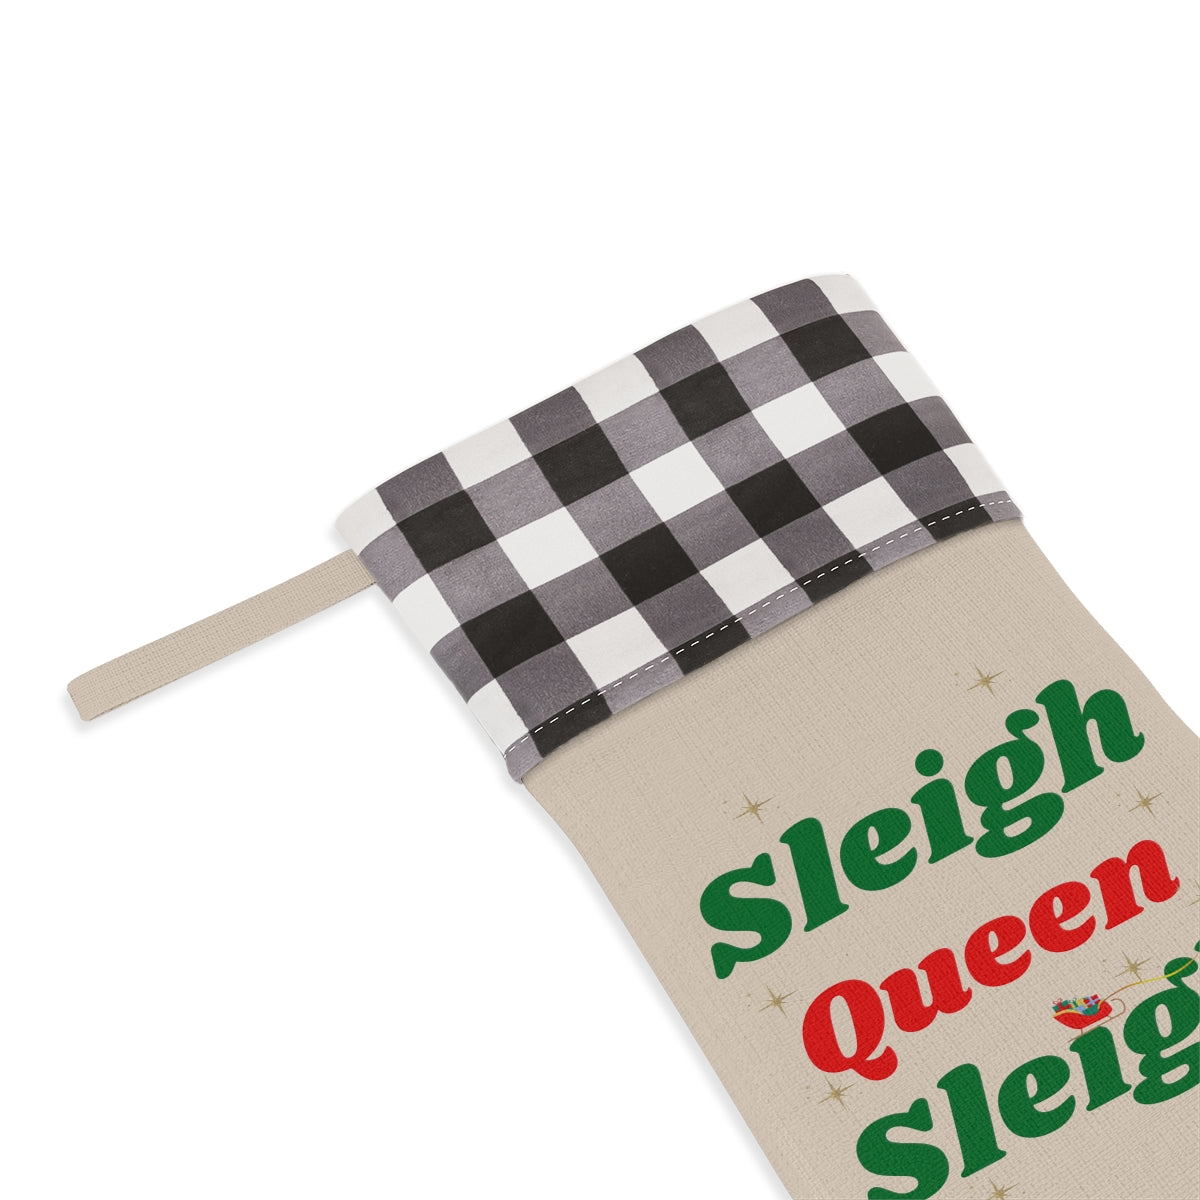 Sleigh Queen Sleigh Christmas Stocking